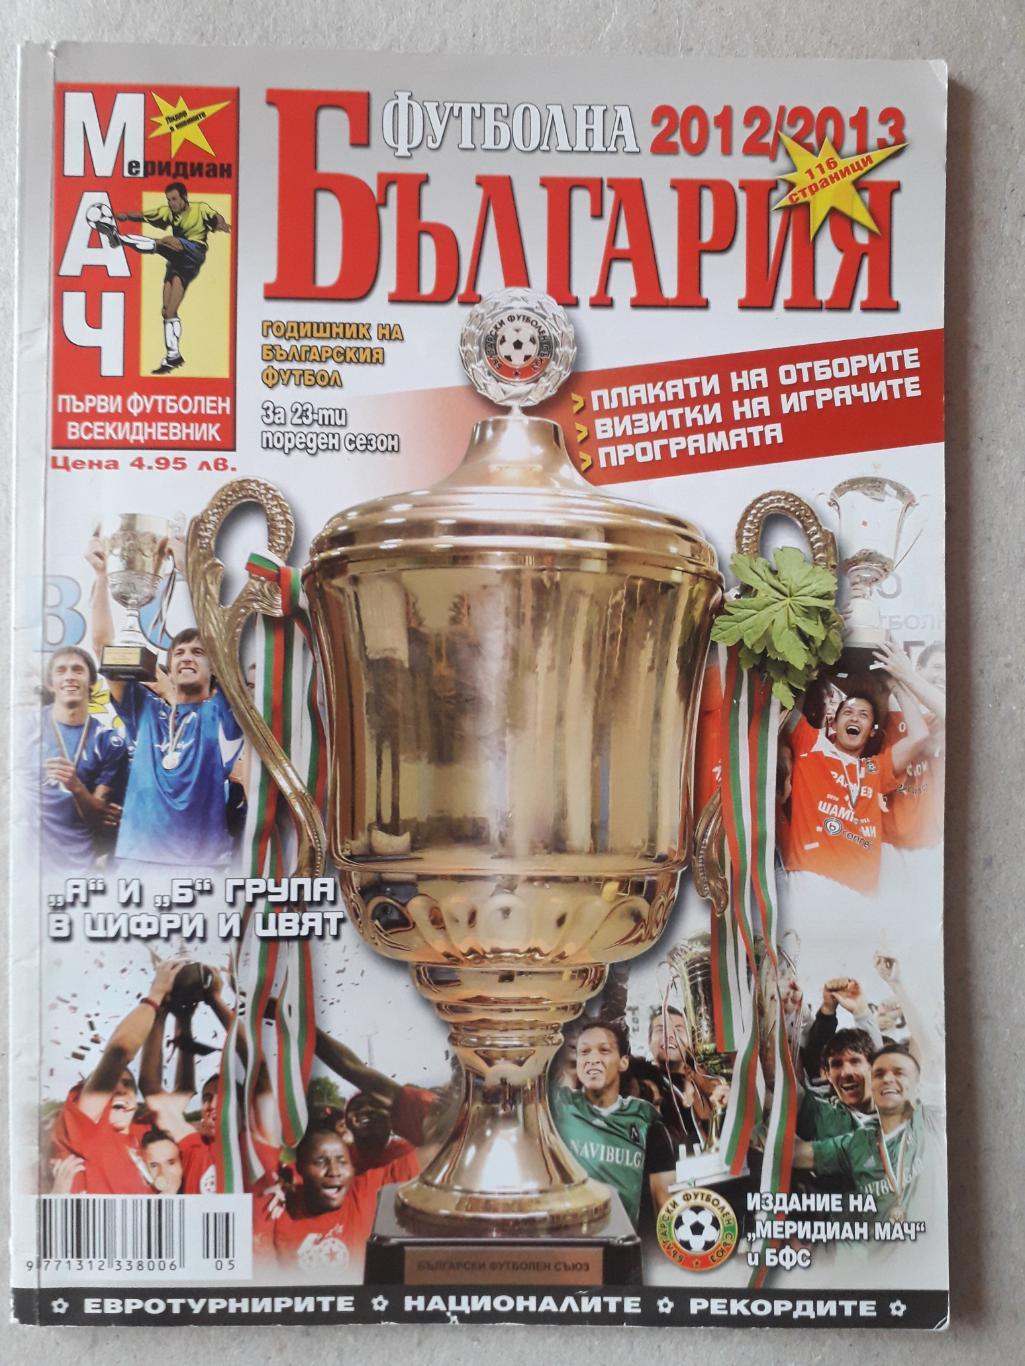 Болгарская 1-я и 2-я лига 2012/13.